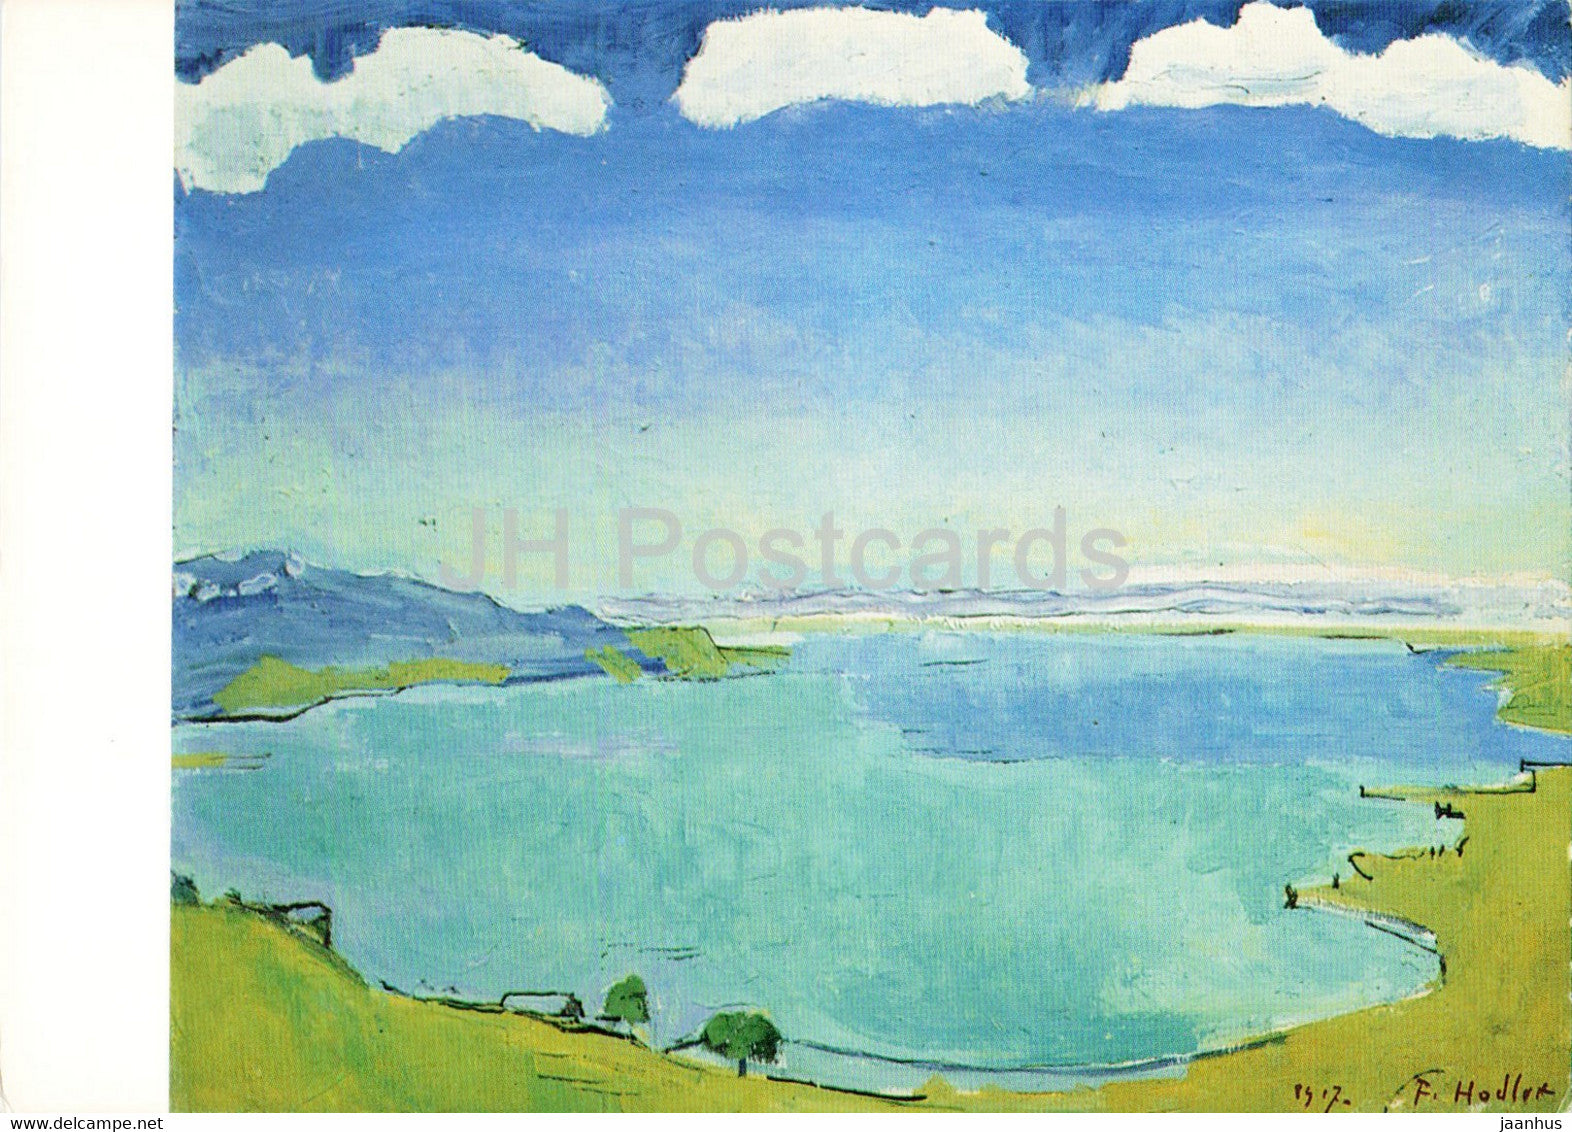 painting by Ferdinand Hodler - Genfersee von Caux aus - Lake of Geneva seen from Caux - Swiss art - Switzerland - unused - JH Postcards